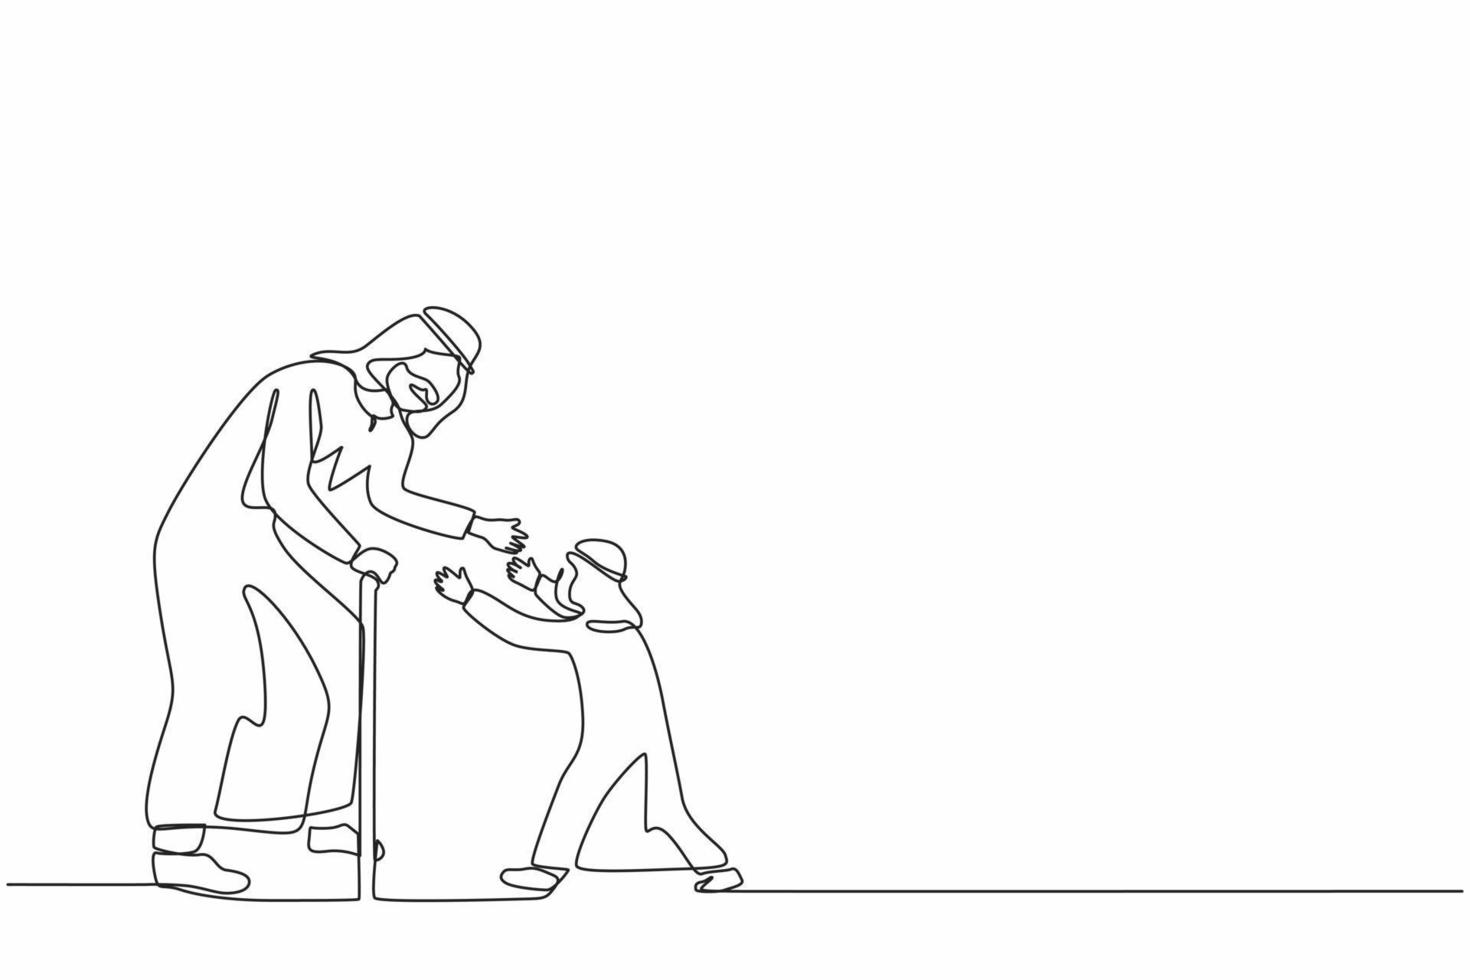 único desenho de uma linha menino feliz correndo para abraçar seu avô. neto árabe visitando avós. homem sênior dando boas-vindas ao neto em casa. ilustração em vetor design de desenho de linha contínua